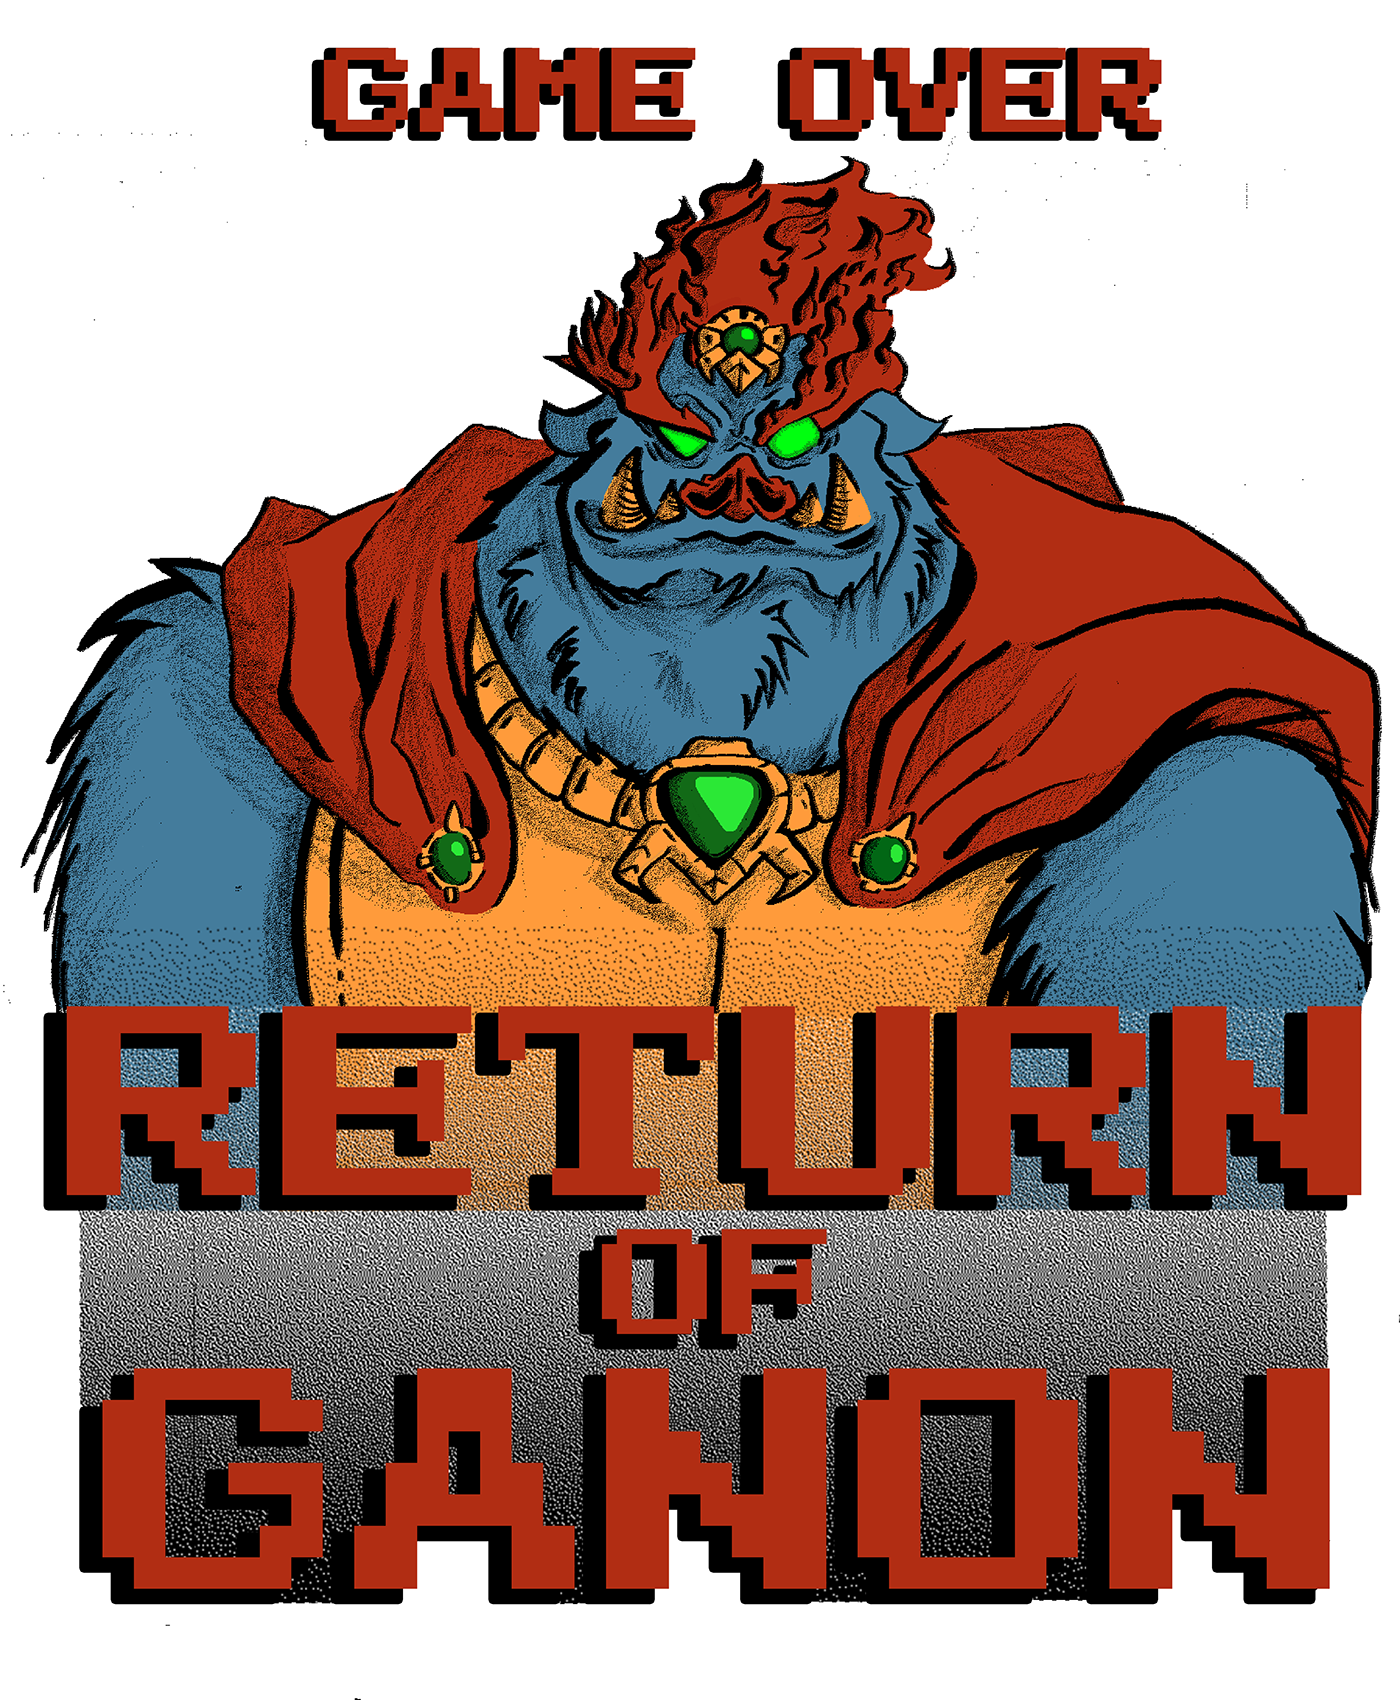 Ganon LOZ custom shirt Legend of Zelda video game NES Nintendo